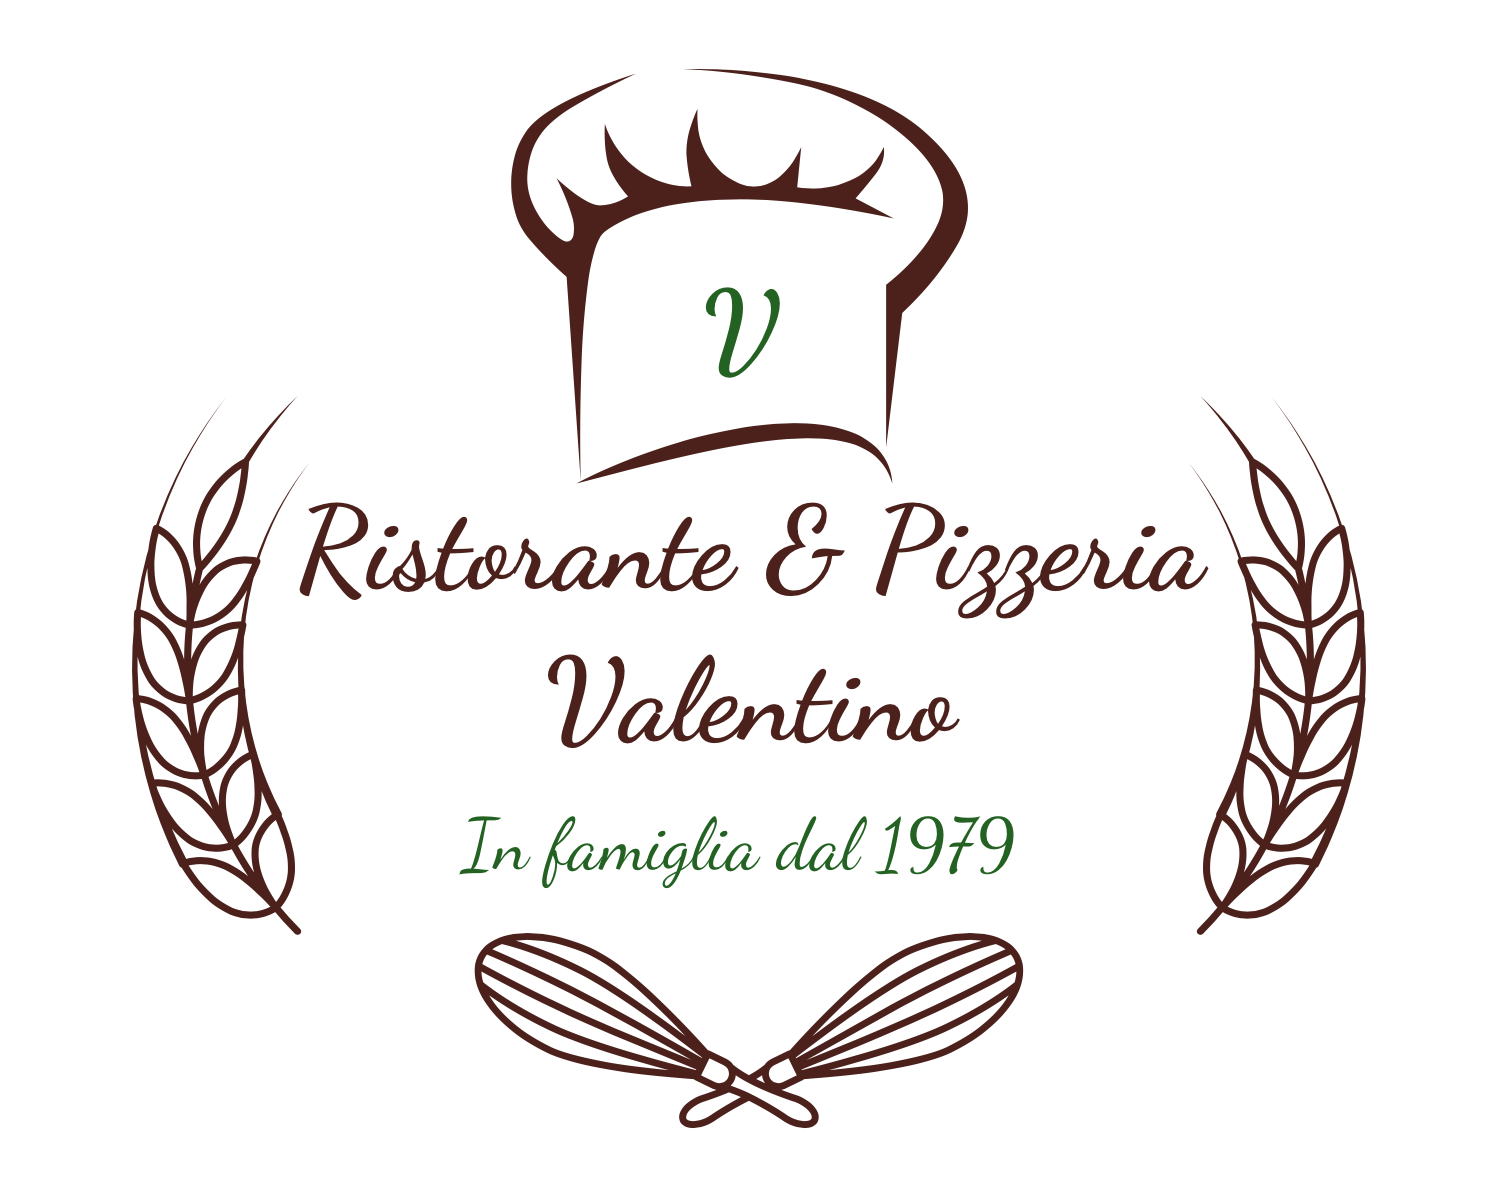 Ristorante & Pizzeria Valentino